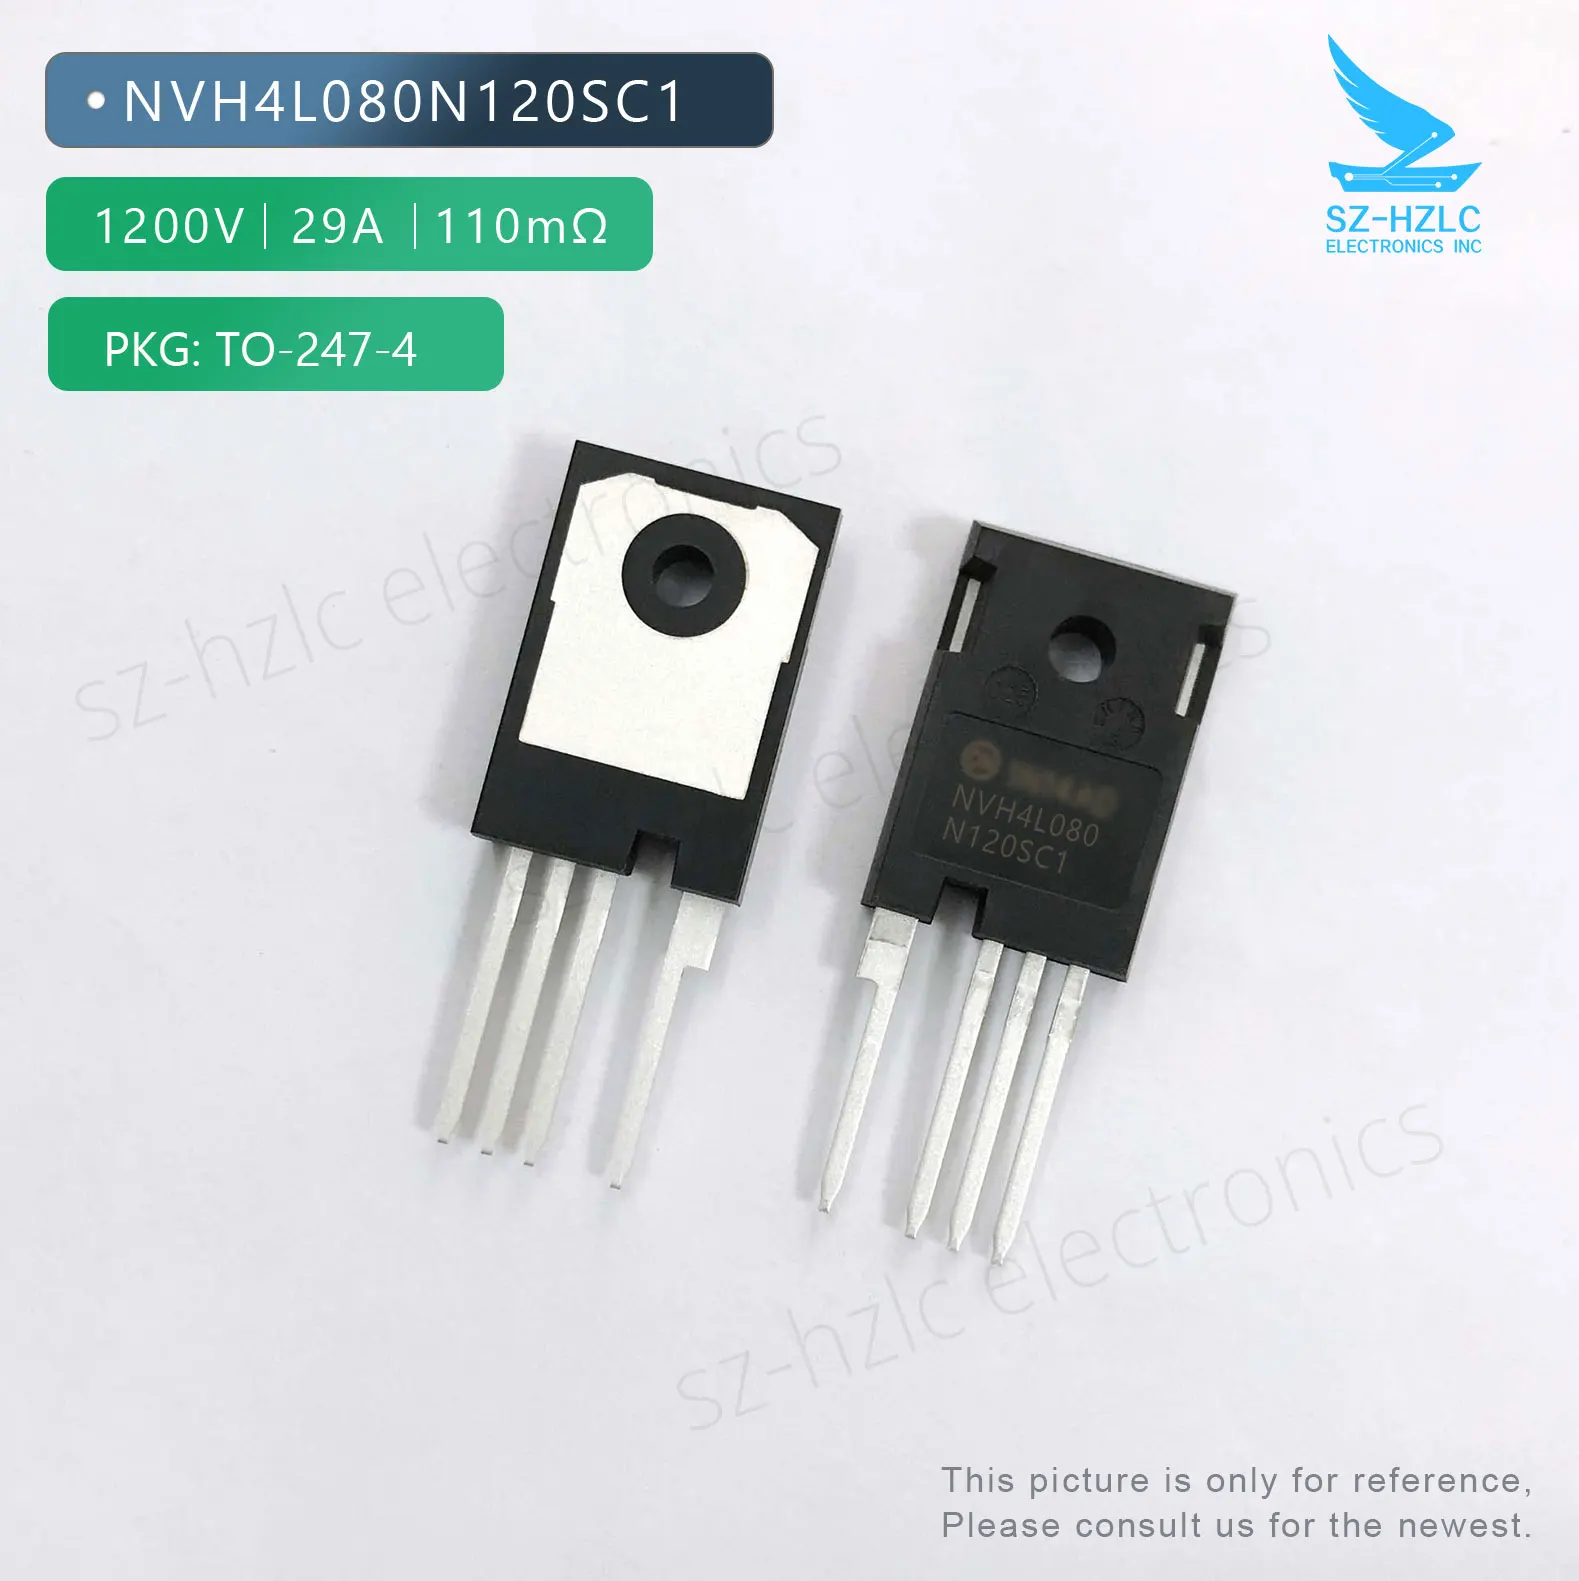 

NVH4L080N120SC1 SICFET Nmos 1200V 29A 110mΩ TO-247-4 NVH4L080